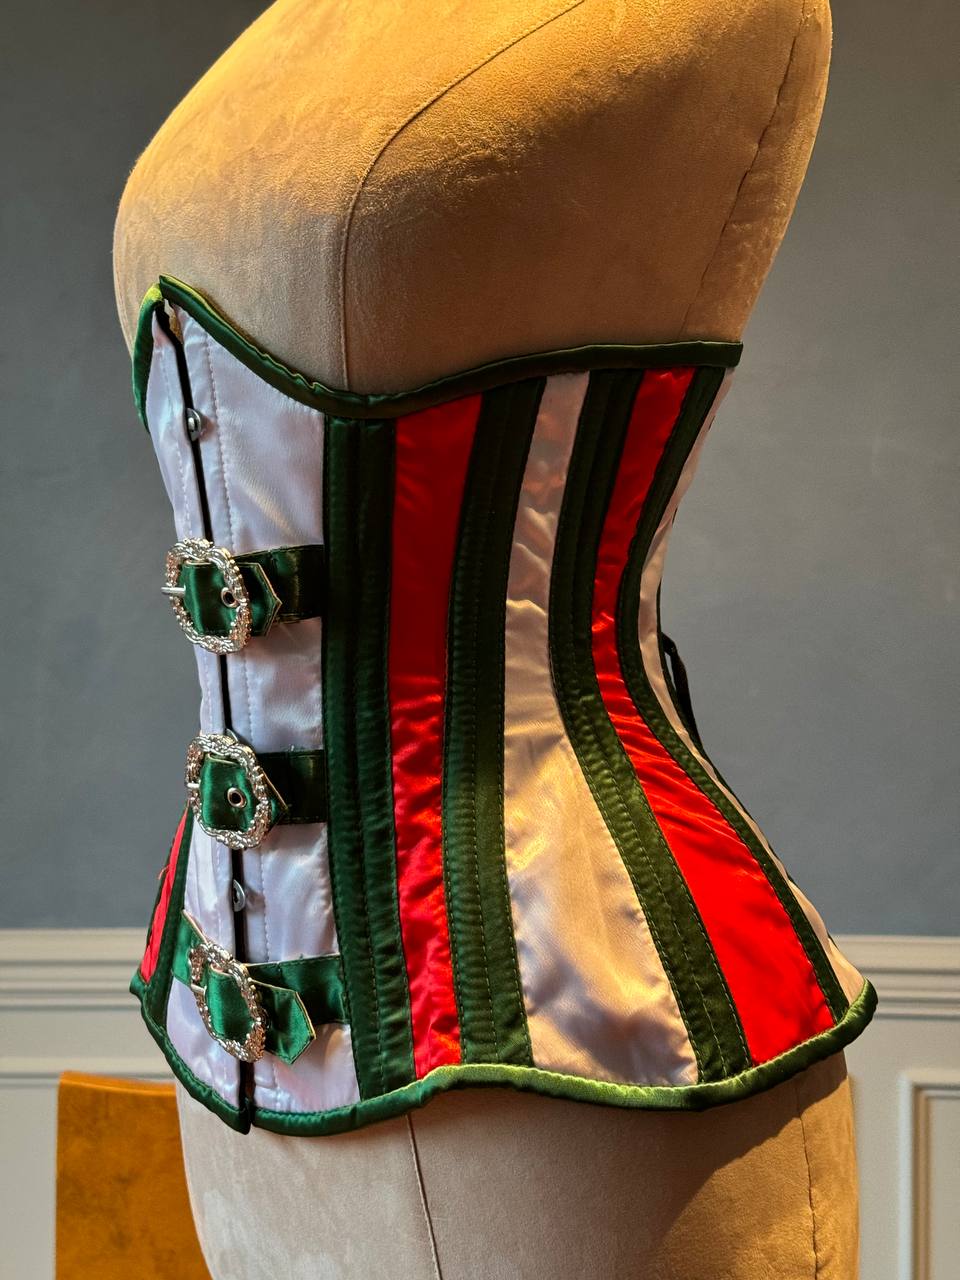 
                  
                    Corset sottoseno rosso e verde in raso in stile Santa con chiusure steampunk davanti. Il corsetto è realizzato personalmente secondo le tue misure.
                  
                